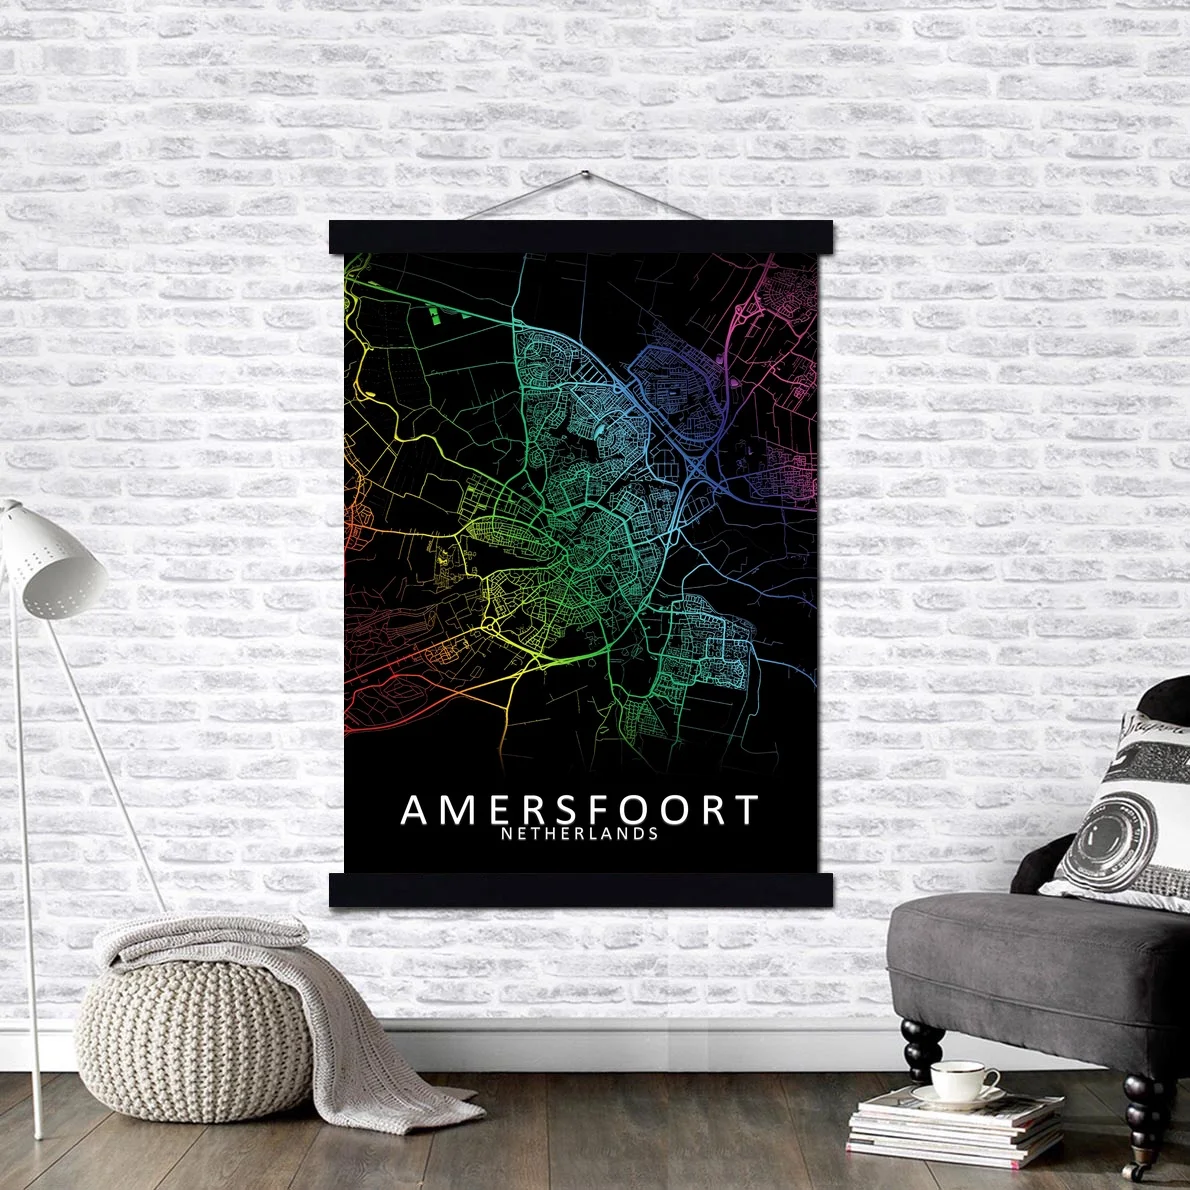 

Картина на холсте Amersfoort с изображением карты Города Нидерландов, плакат на стену с магнитной фотографией, подвесной комплект